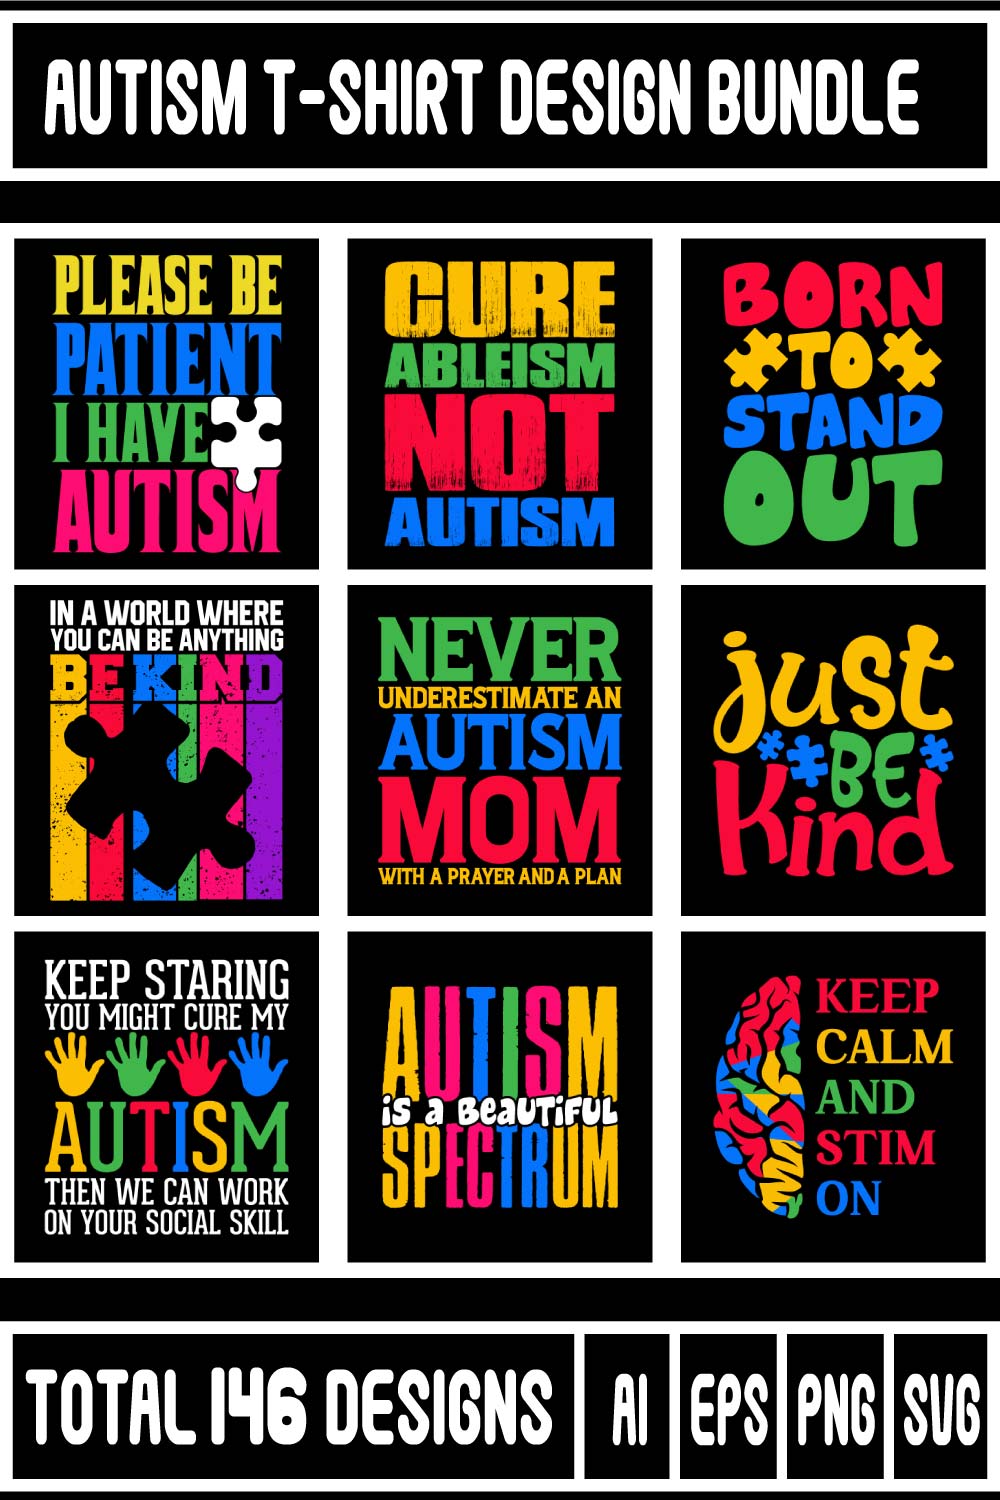 Autism T-shirt Design Bundle pinterest preview image.